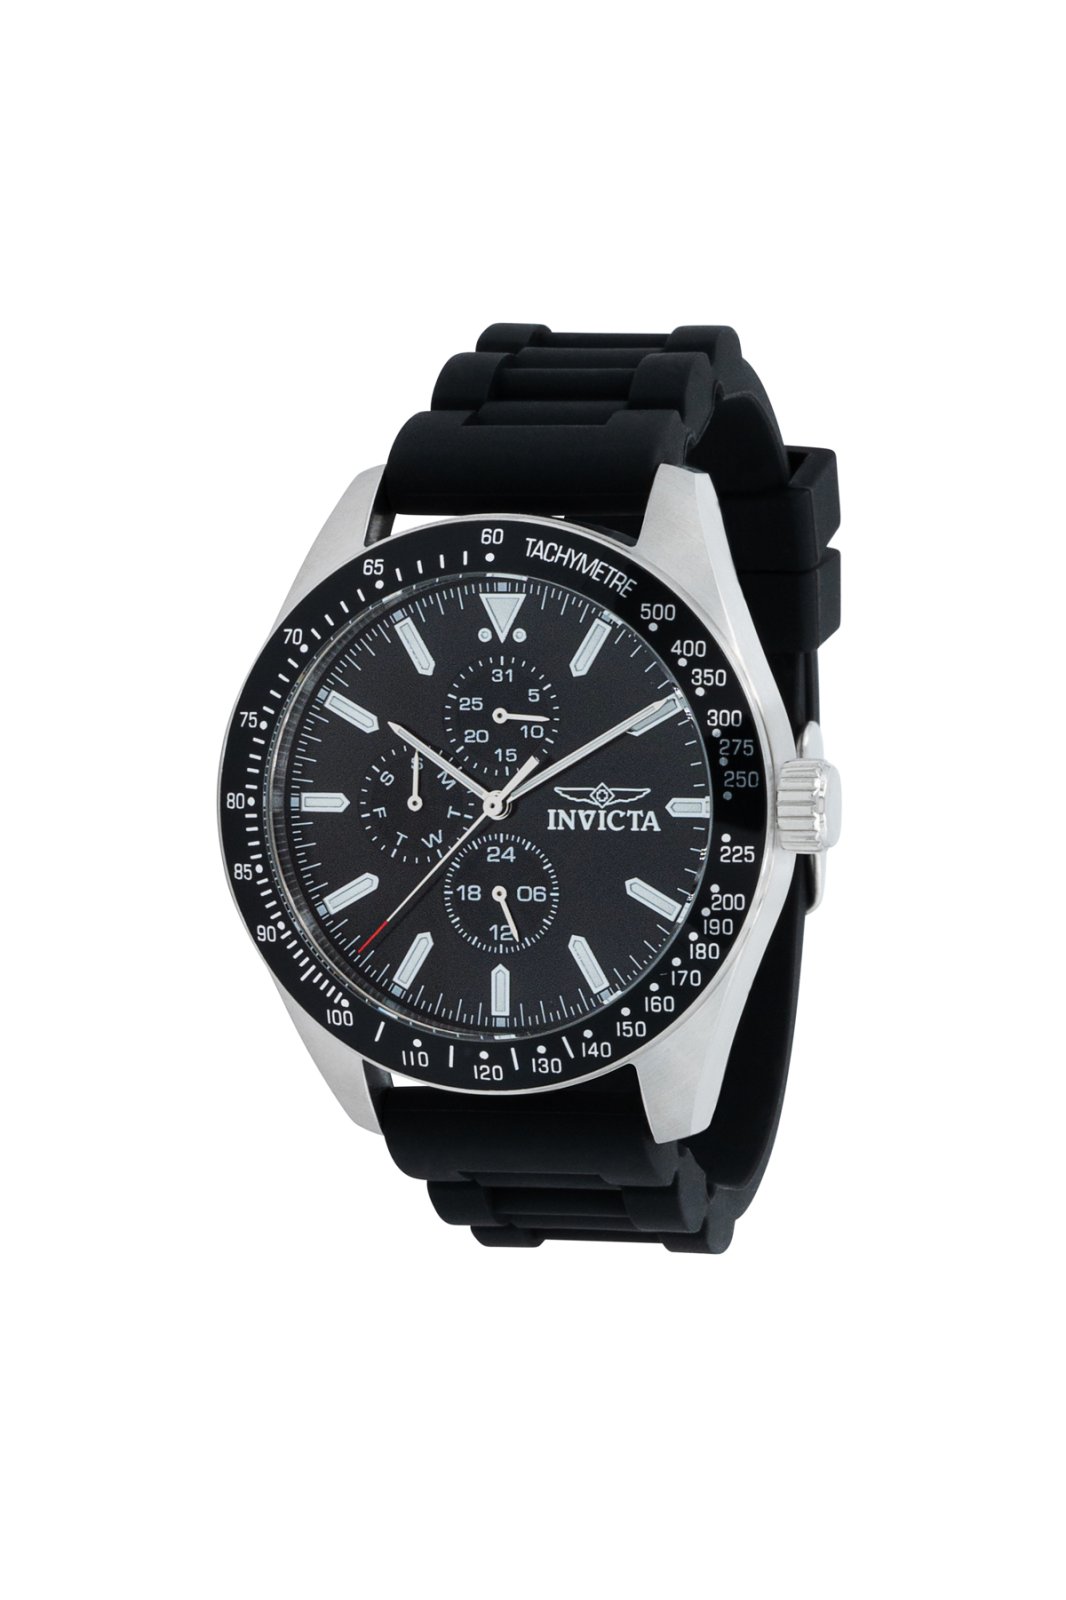 Invicta Aviator 38402 Men's Quartz Watch - 45mm